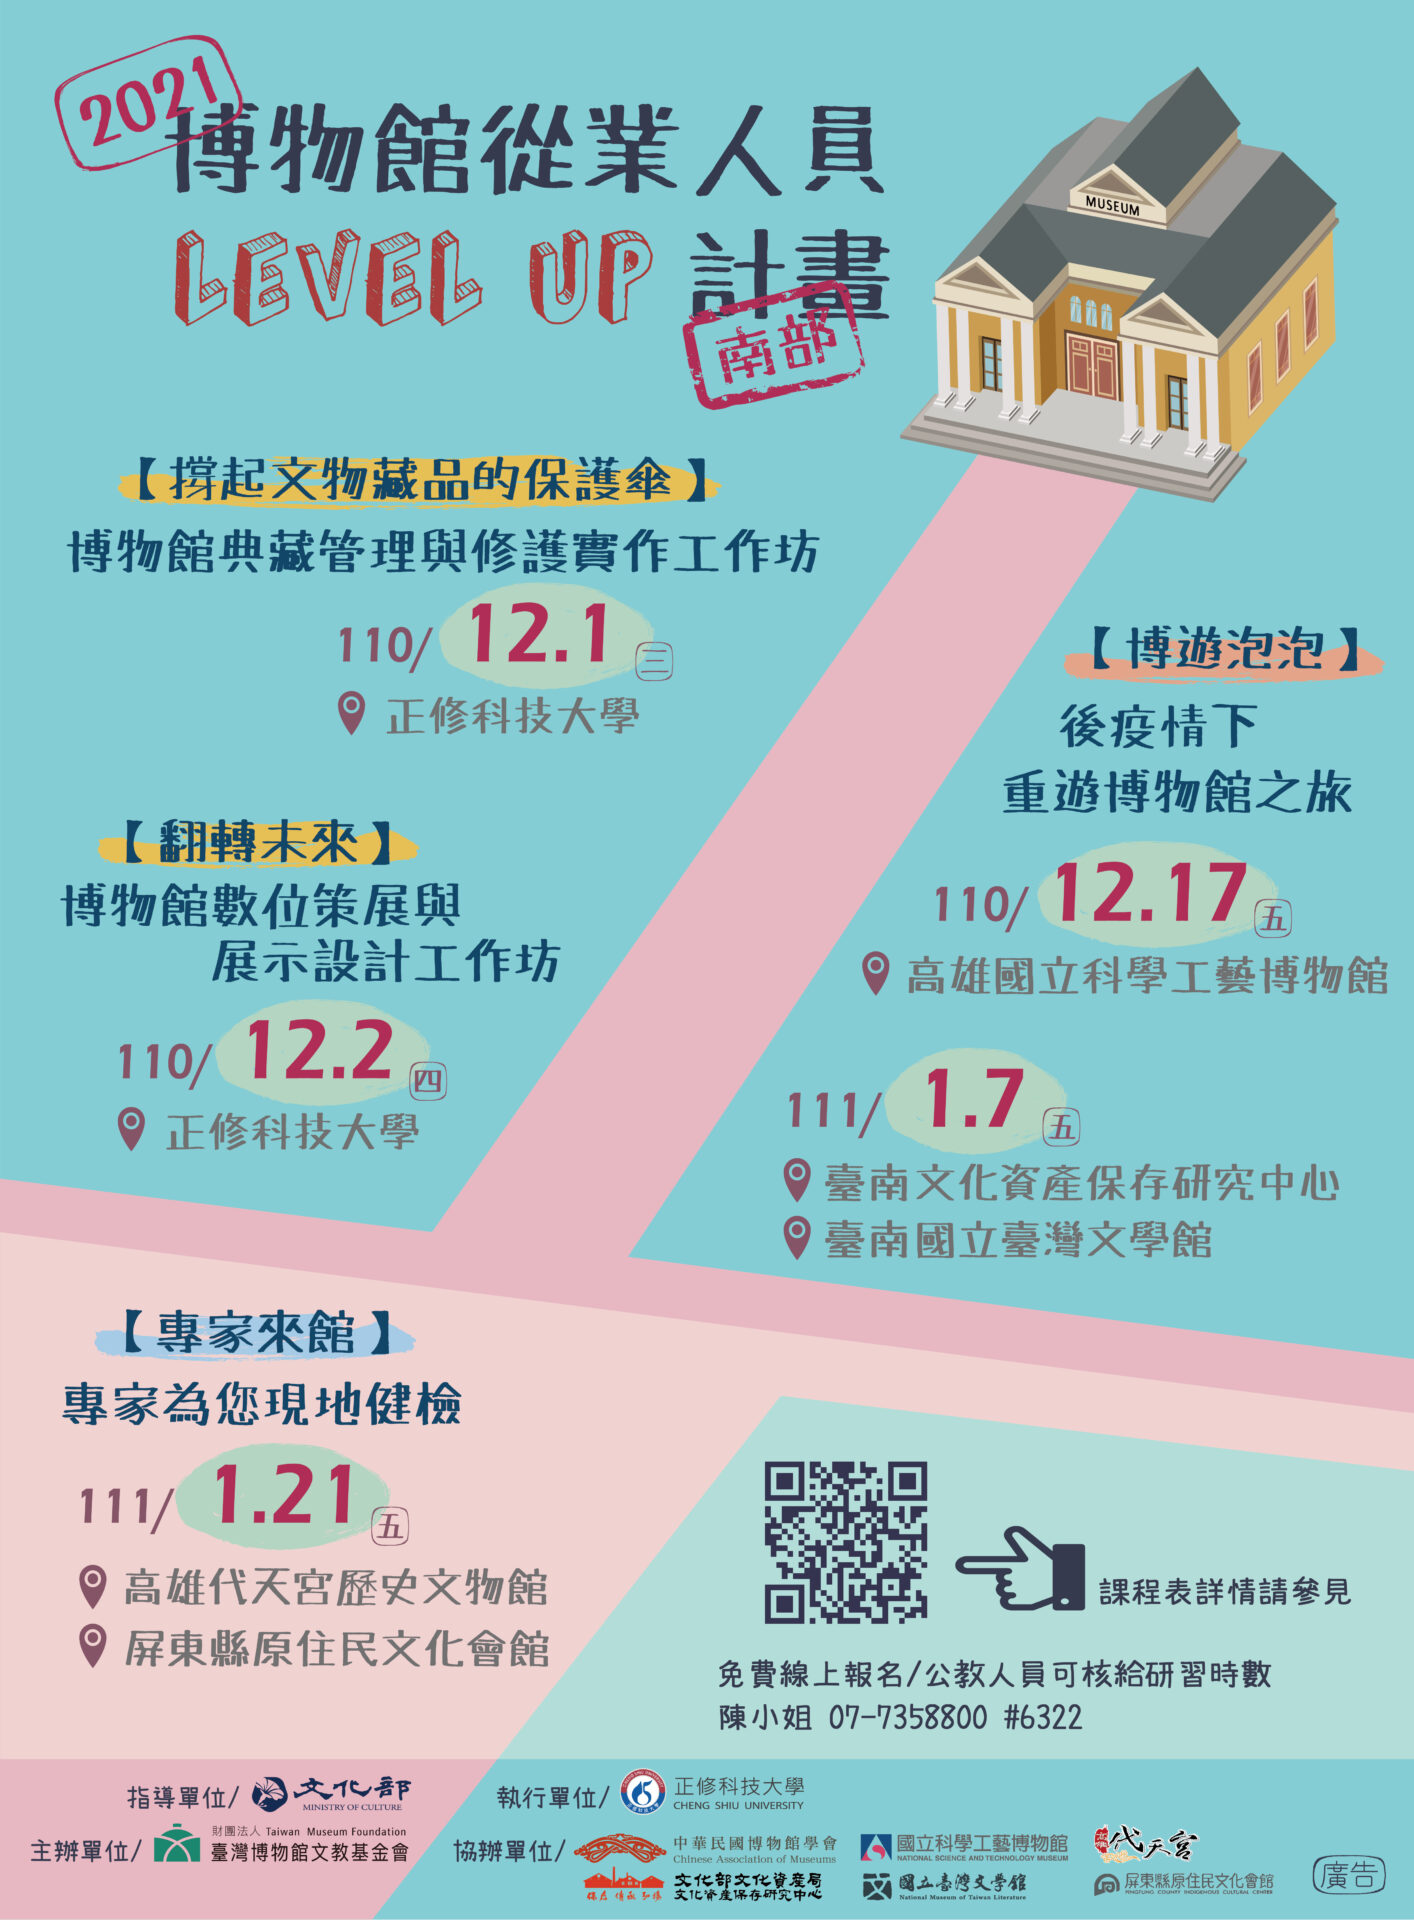 財團法人臺灣博物館文教基金會：【2021博物館從業人員Level UP計畫（南部）】系列活動